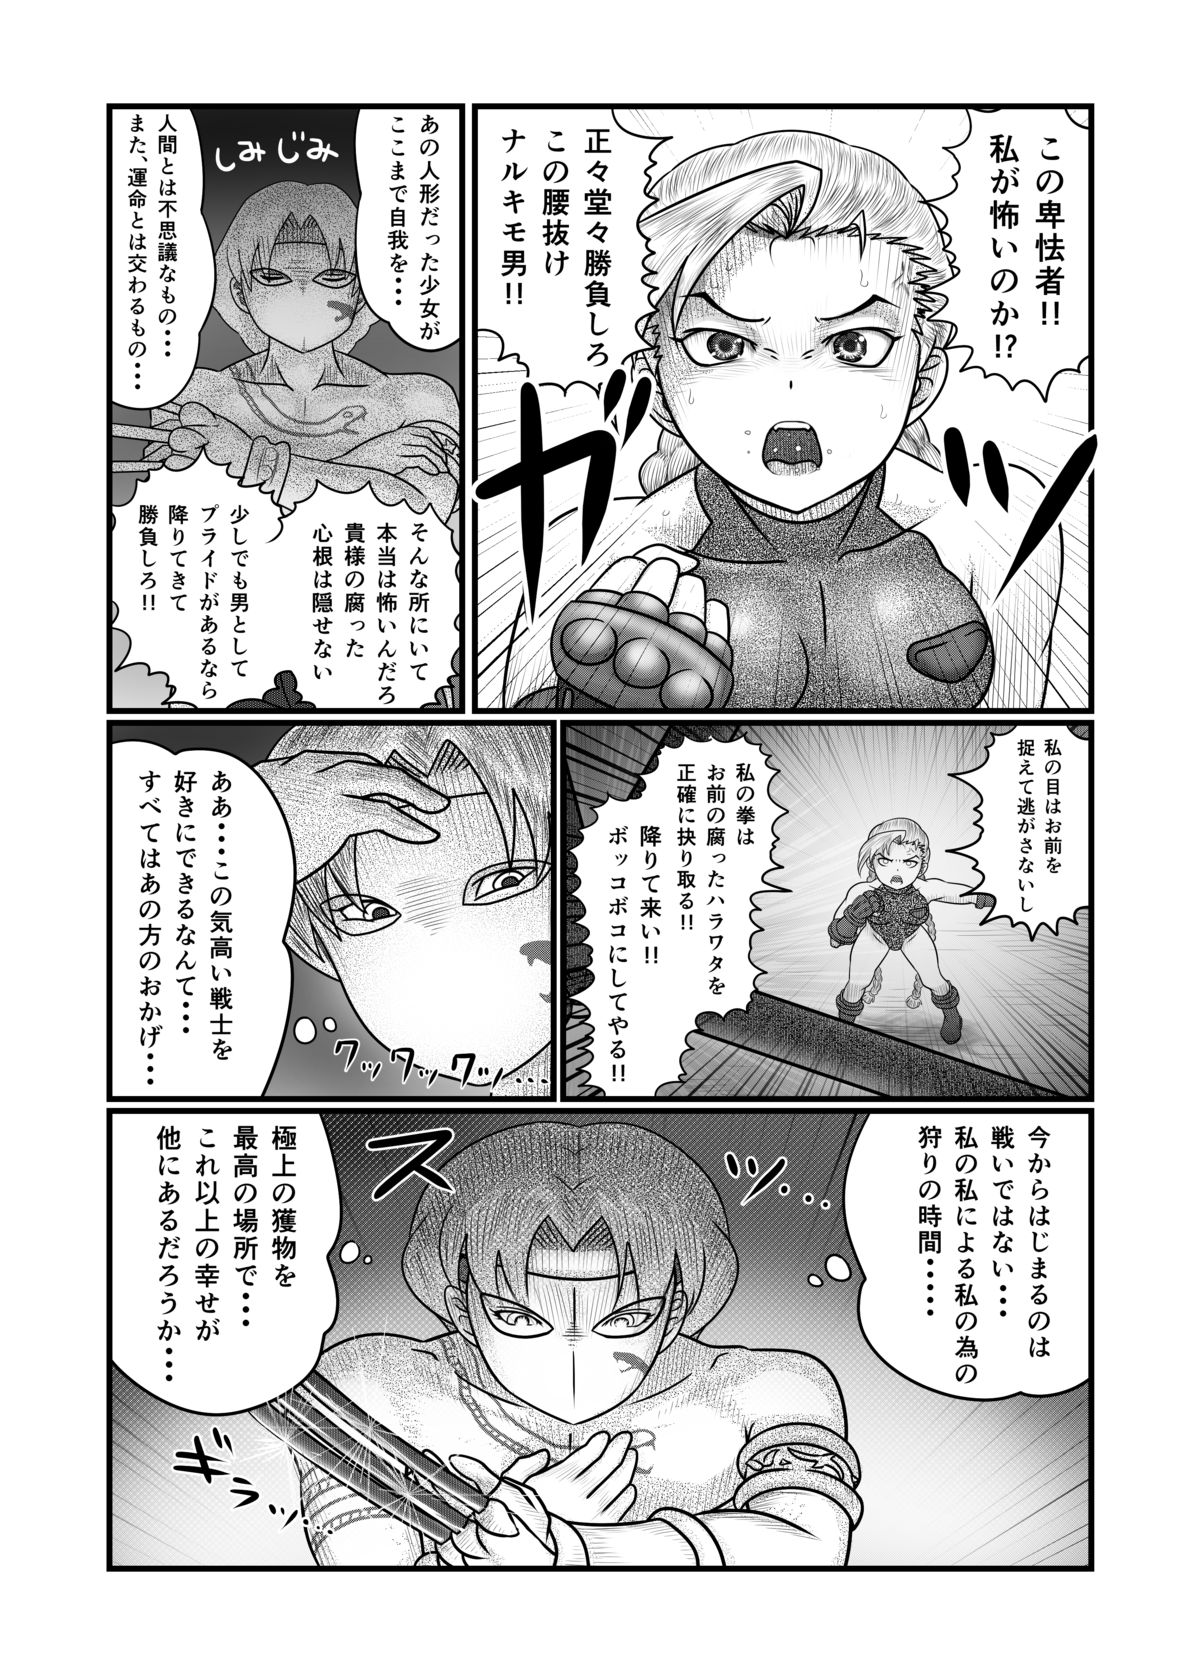 [Nomerikomu] Banurog no Shibou Yuugi (Street Fighter) page 16 full